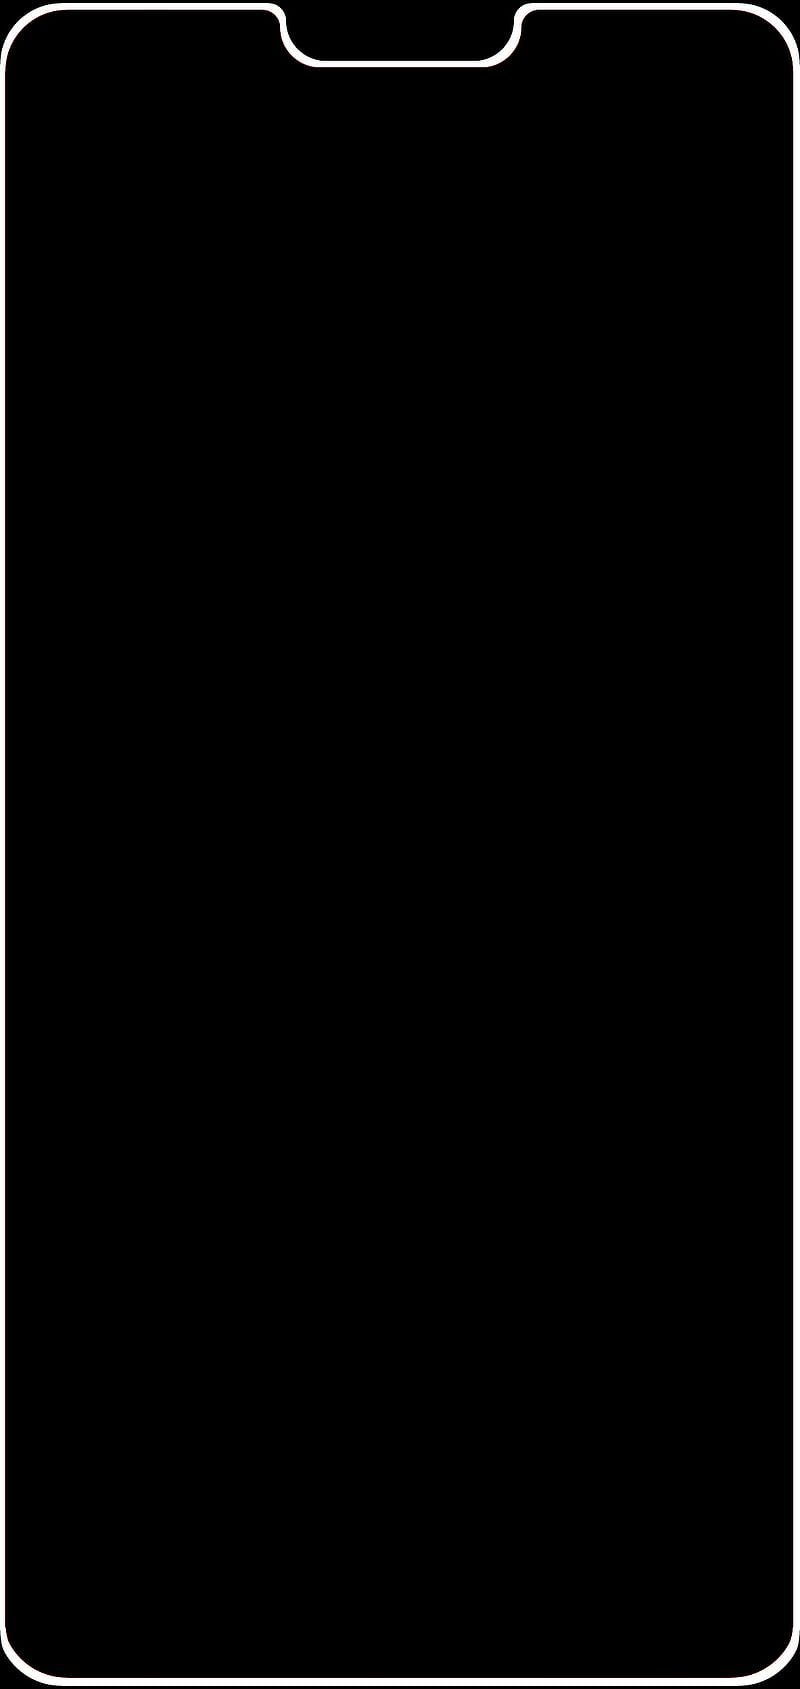 OnePlus 6 white edge edge, galaxy light, one plus, oneplus, oneplus 6, oneplus6, u, HD phone wallpaper